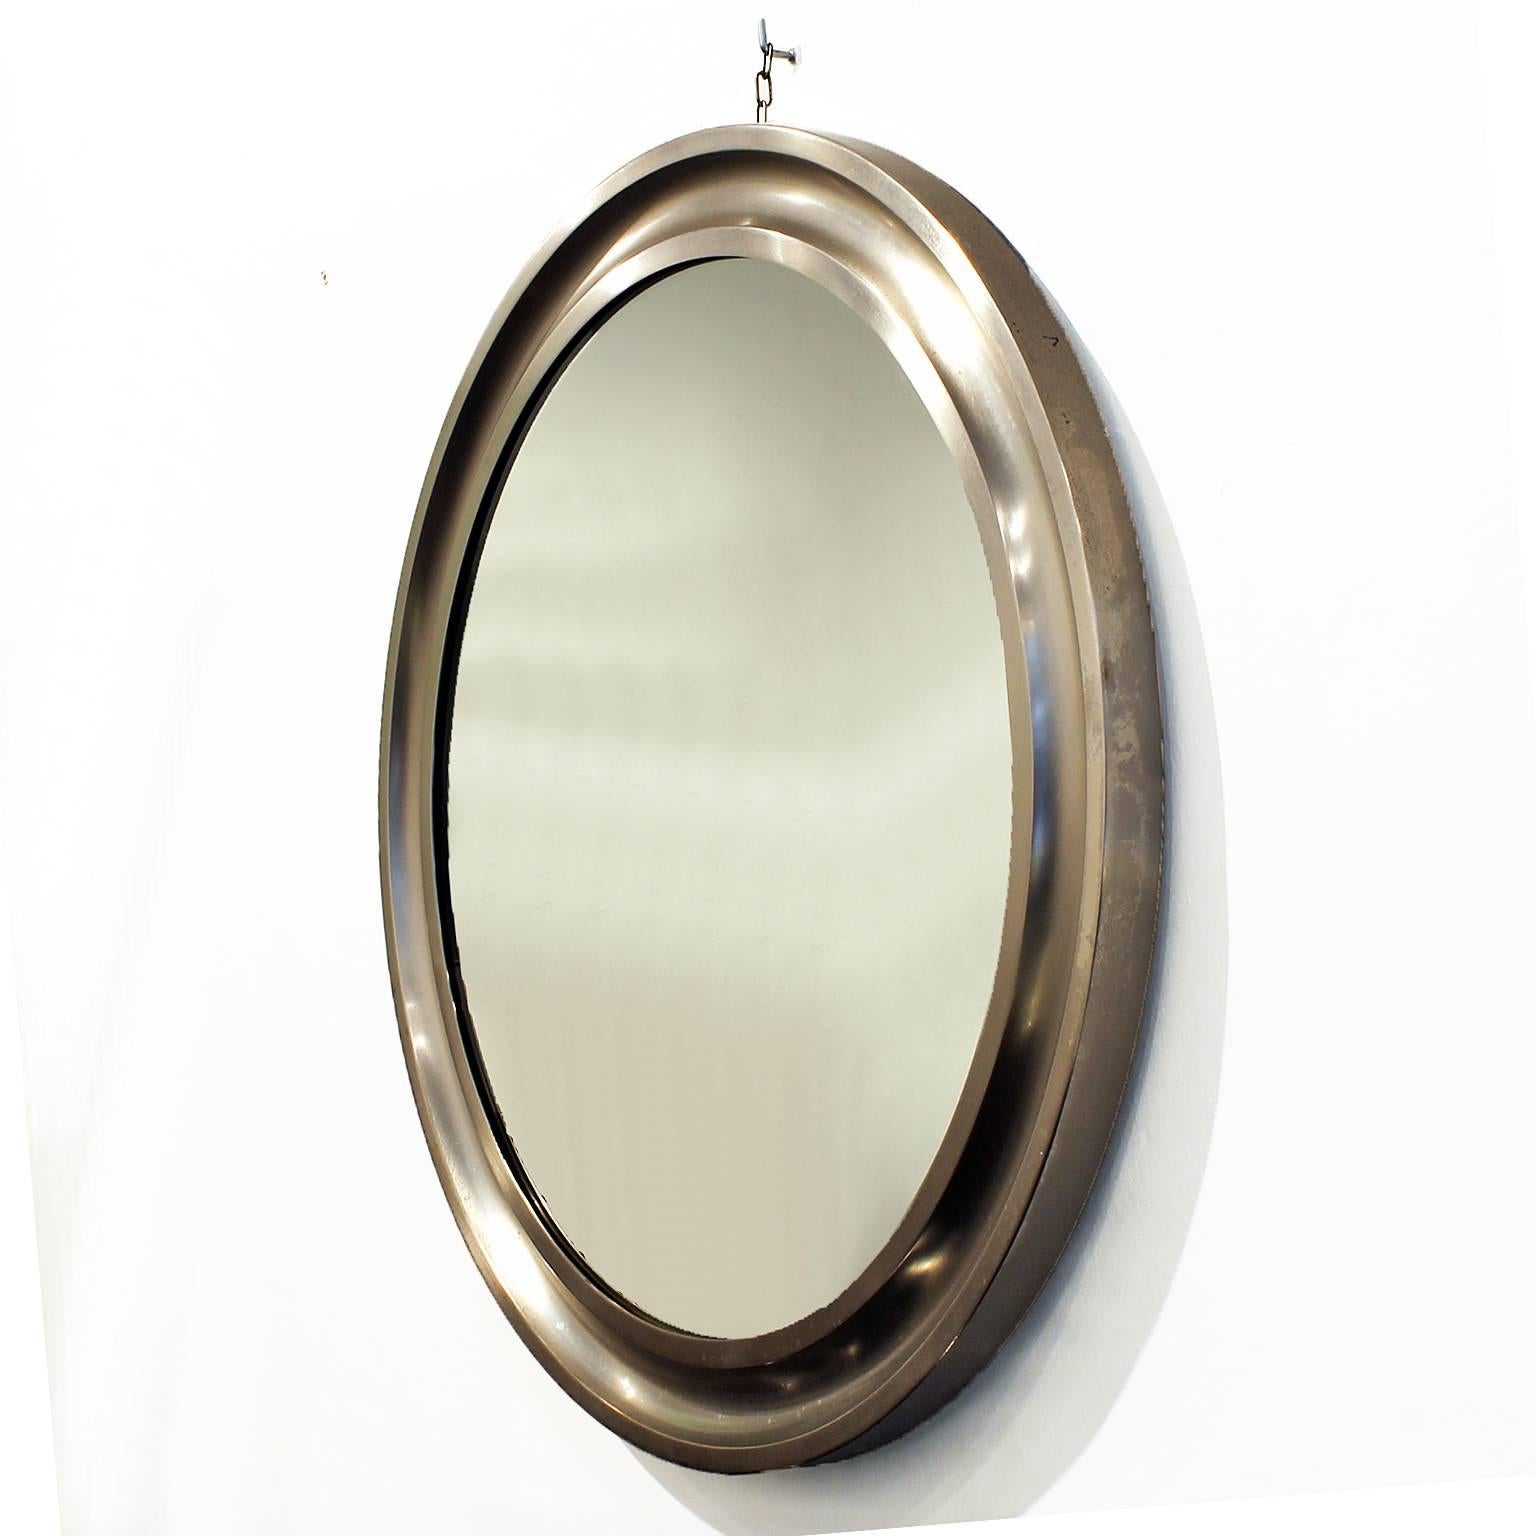 Runder Spiegel, Rahmen aus gebürstetem Aluminium.
Entwurf: Sergio Mazza für Artemide

Italien, um 1960.